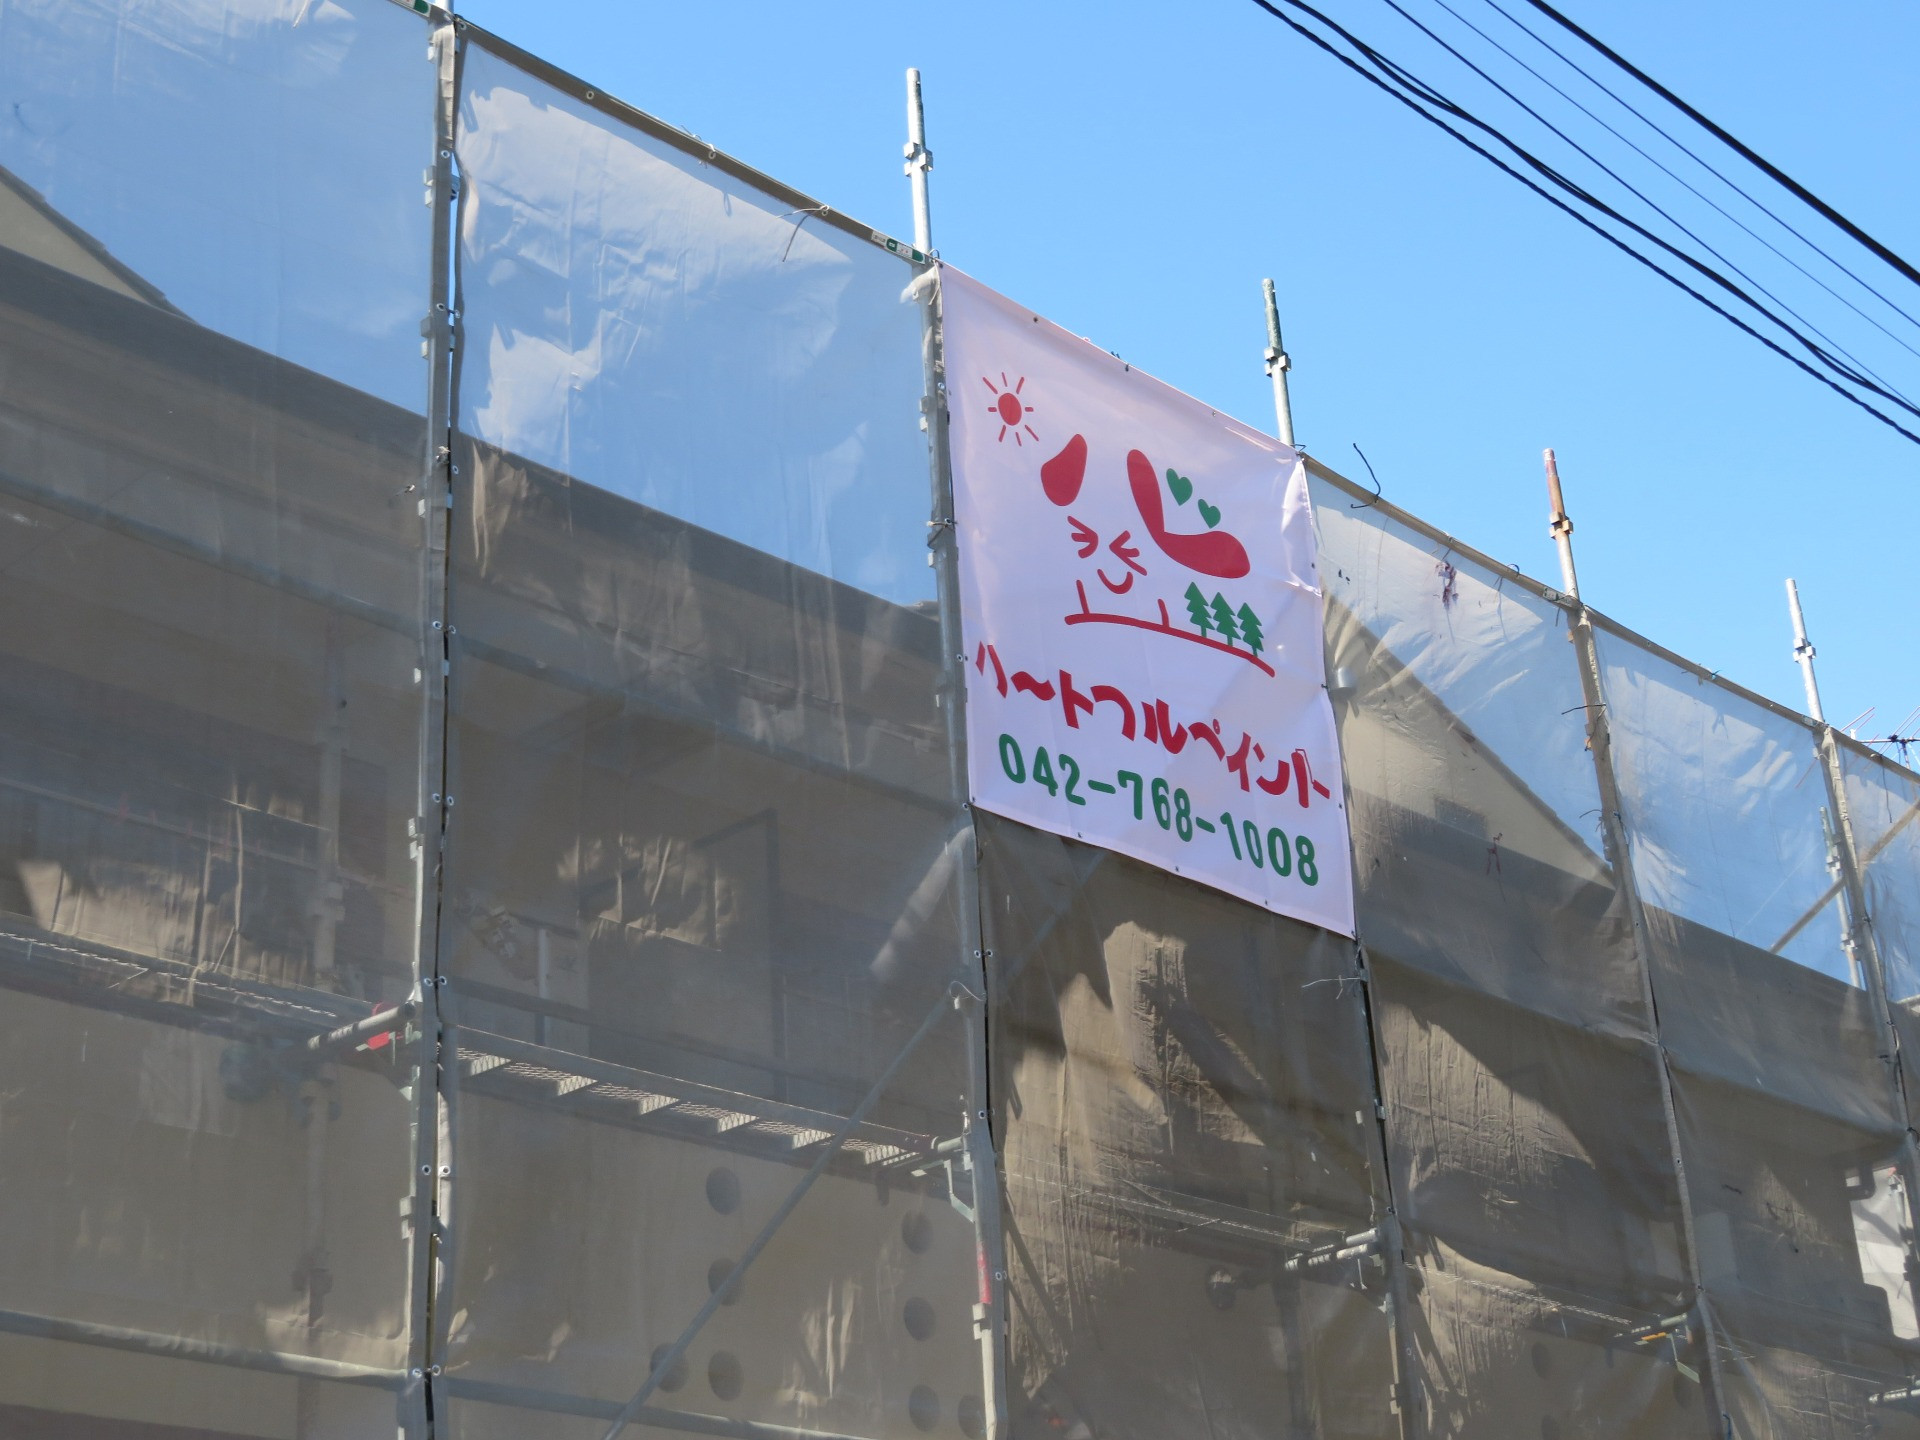 相模原市のM様邸集合住宅で外壁塗装・屋上防水工事の為に足場を組んでおります。